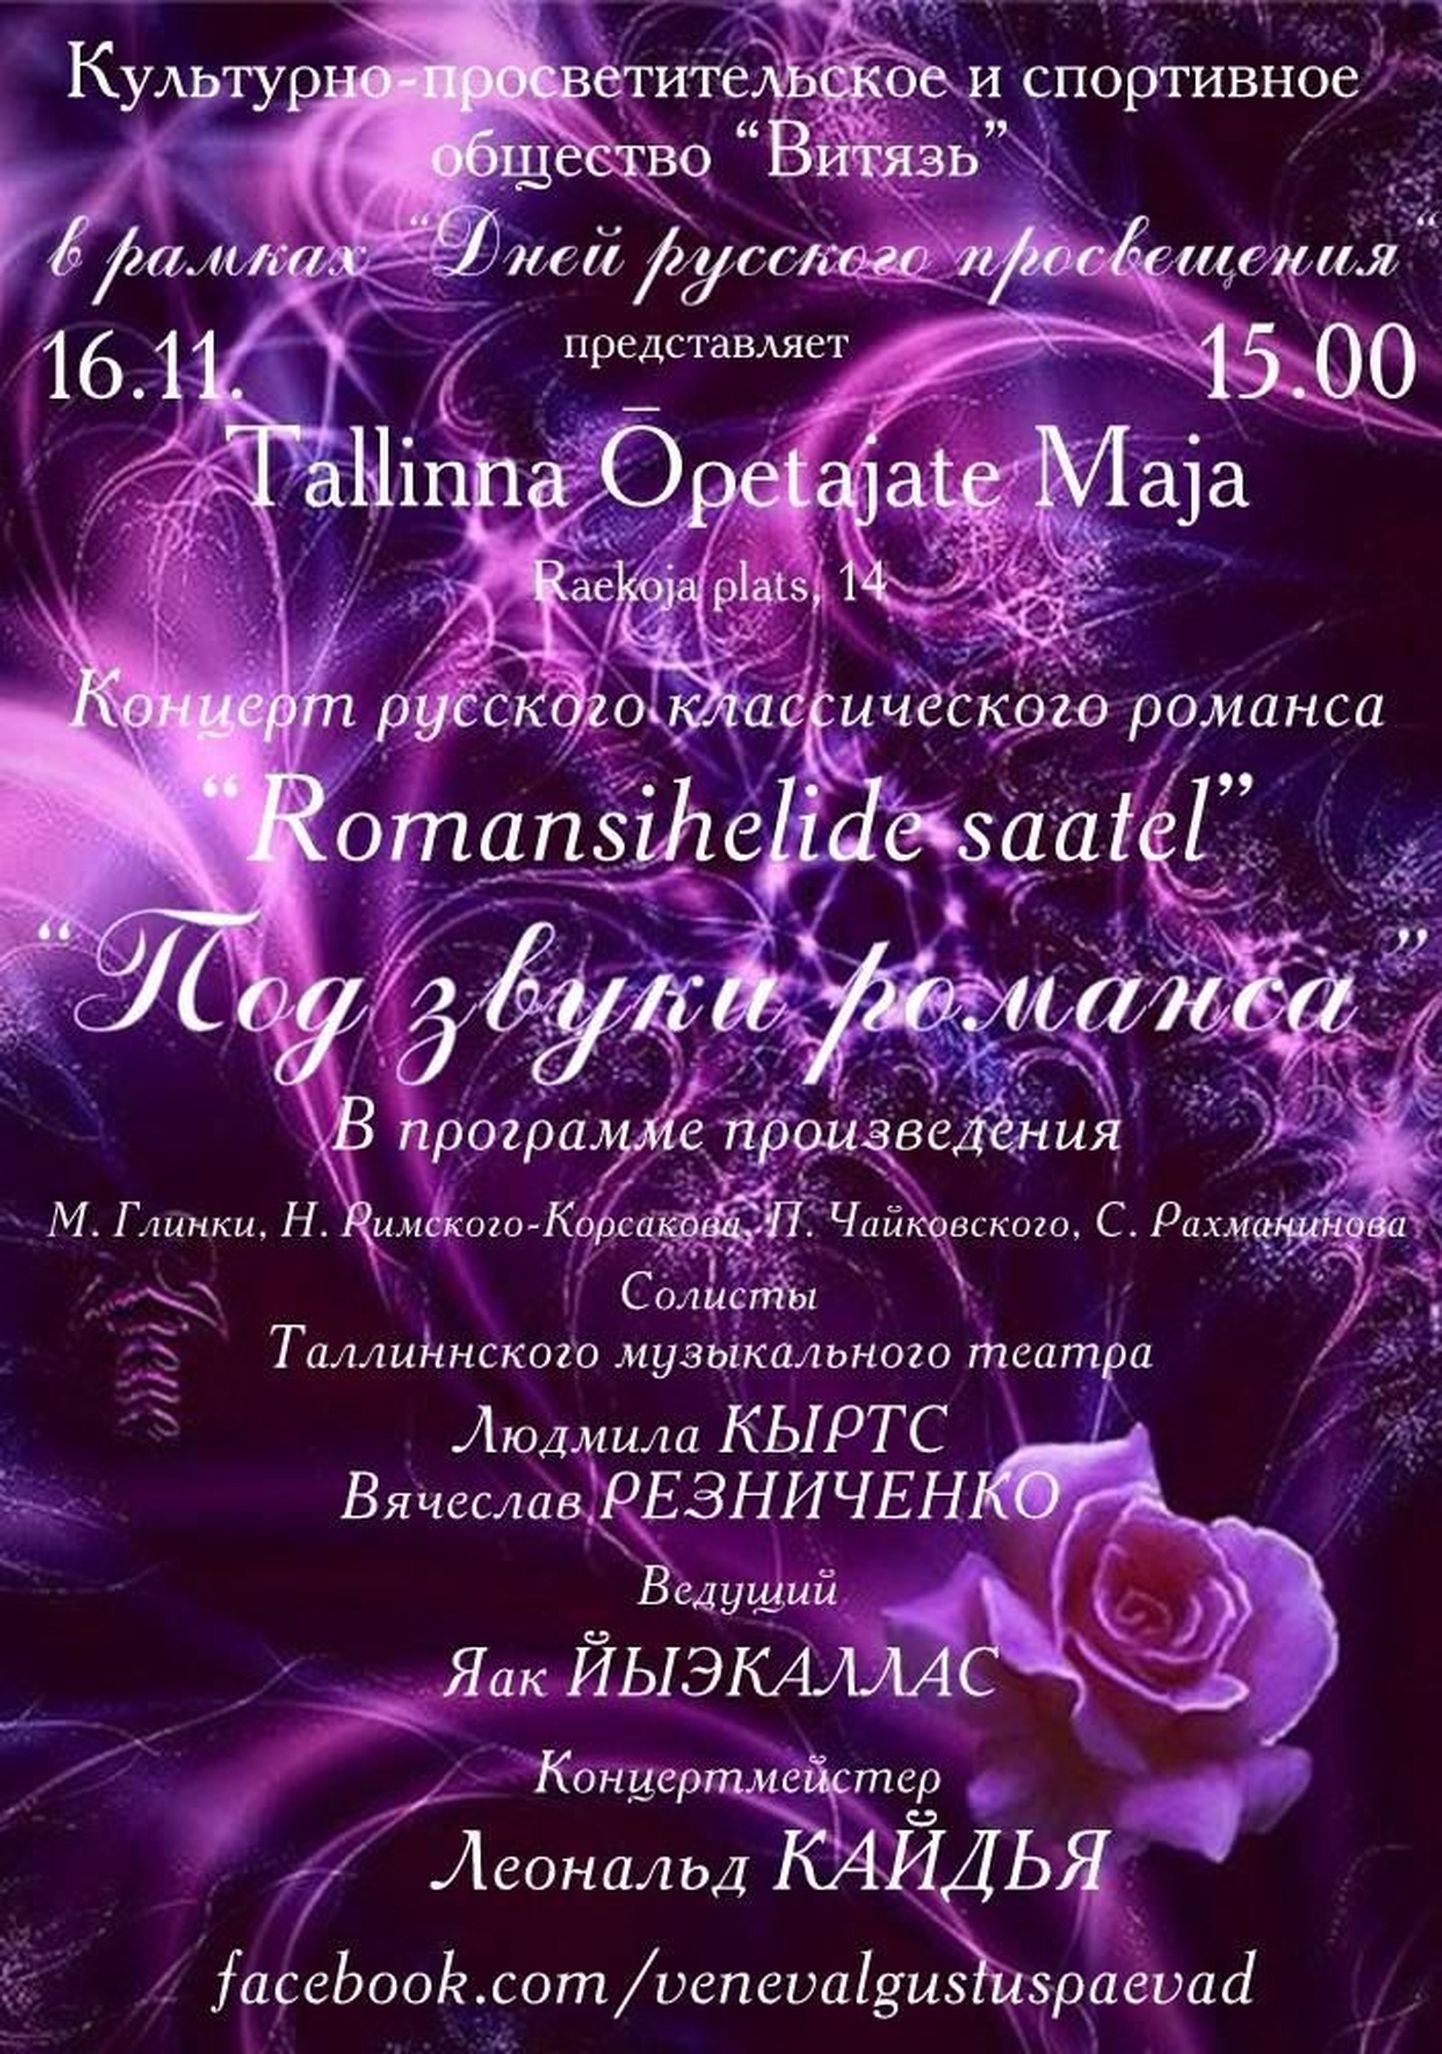 Vene klaasikalise romansside kontsert 'Romansihelide saatel' / Под звуки романса